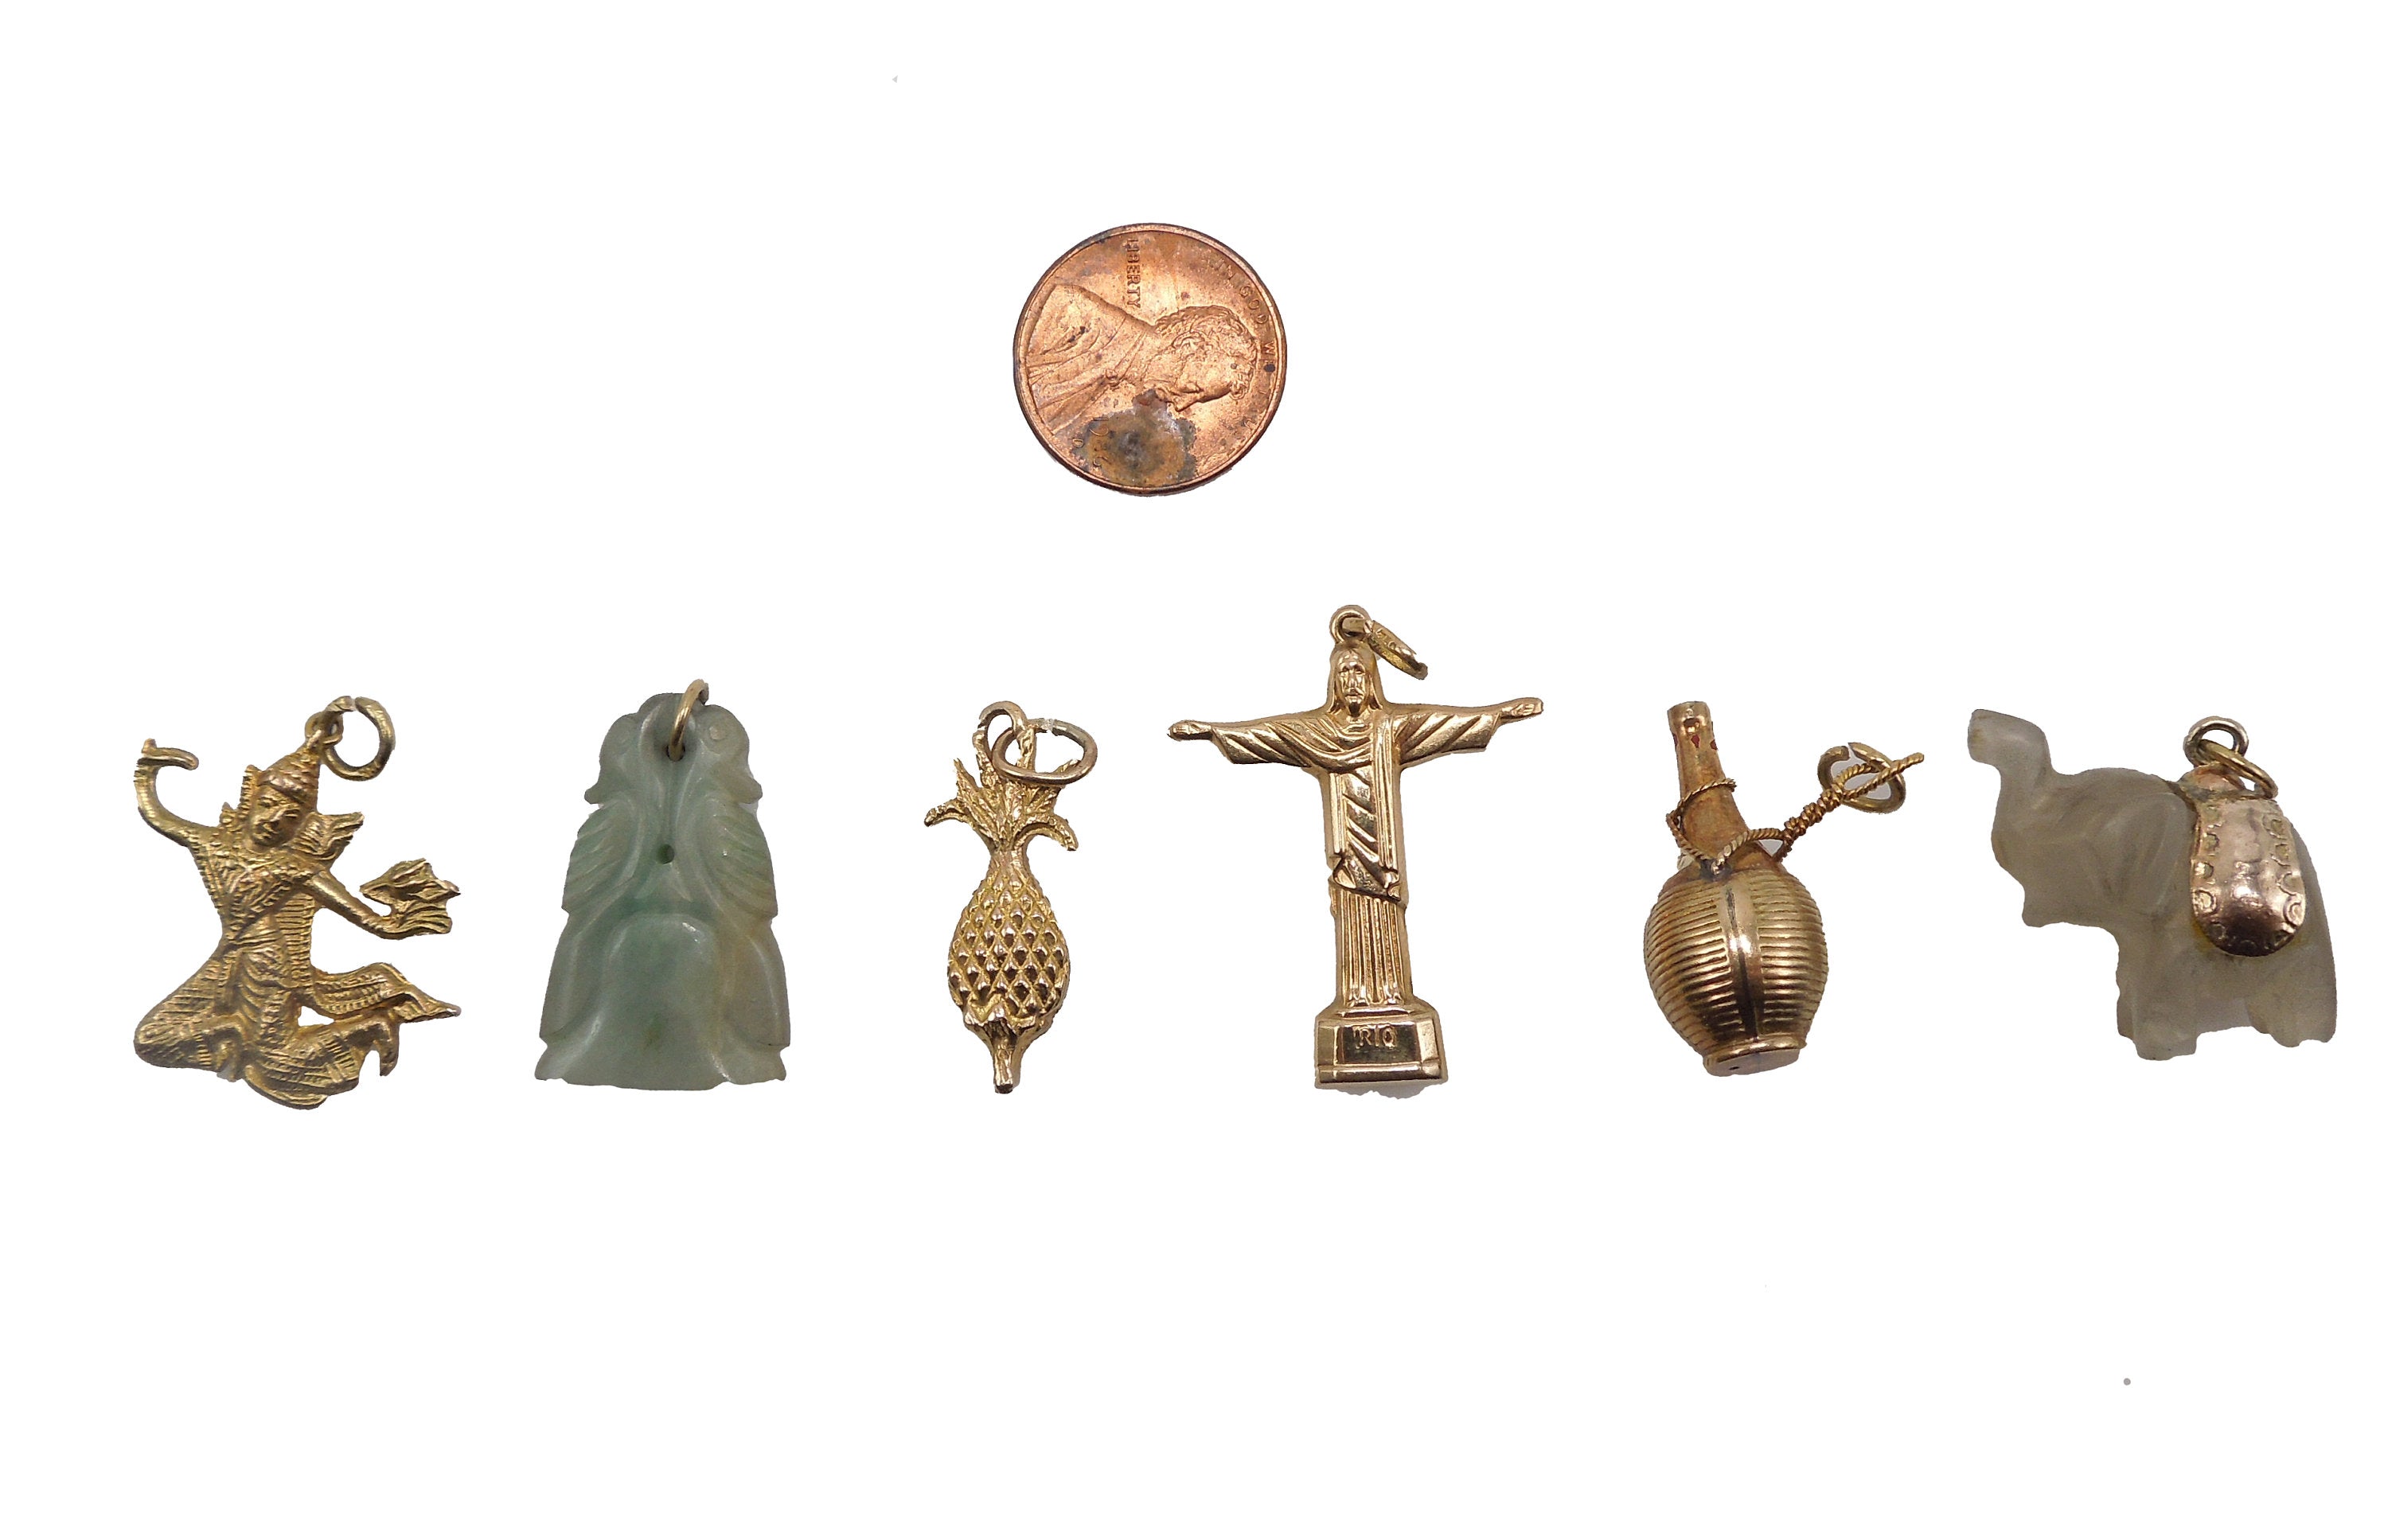 Lot of 6 Gold Charms for Charm Bracelet - Siamese Dancer, Jade Dragon, Pineapple, Cristo Redentor, Chianti Bottle, Elephant